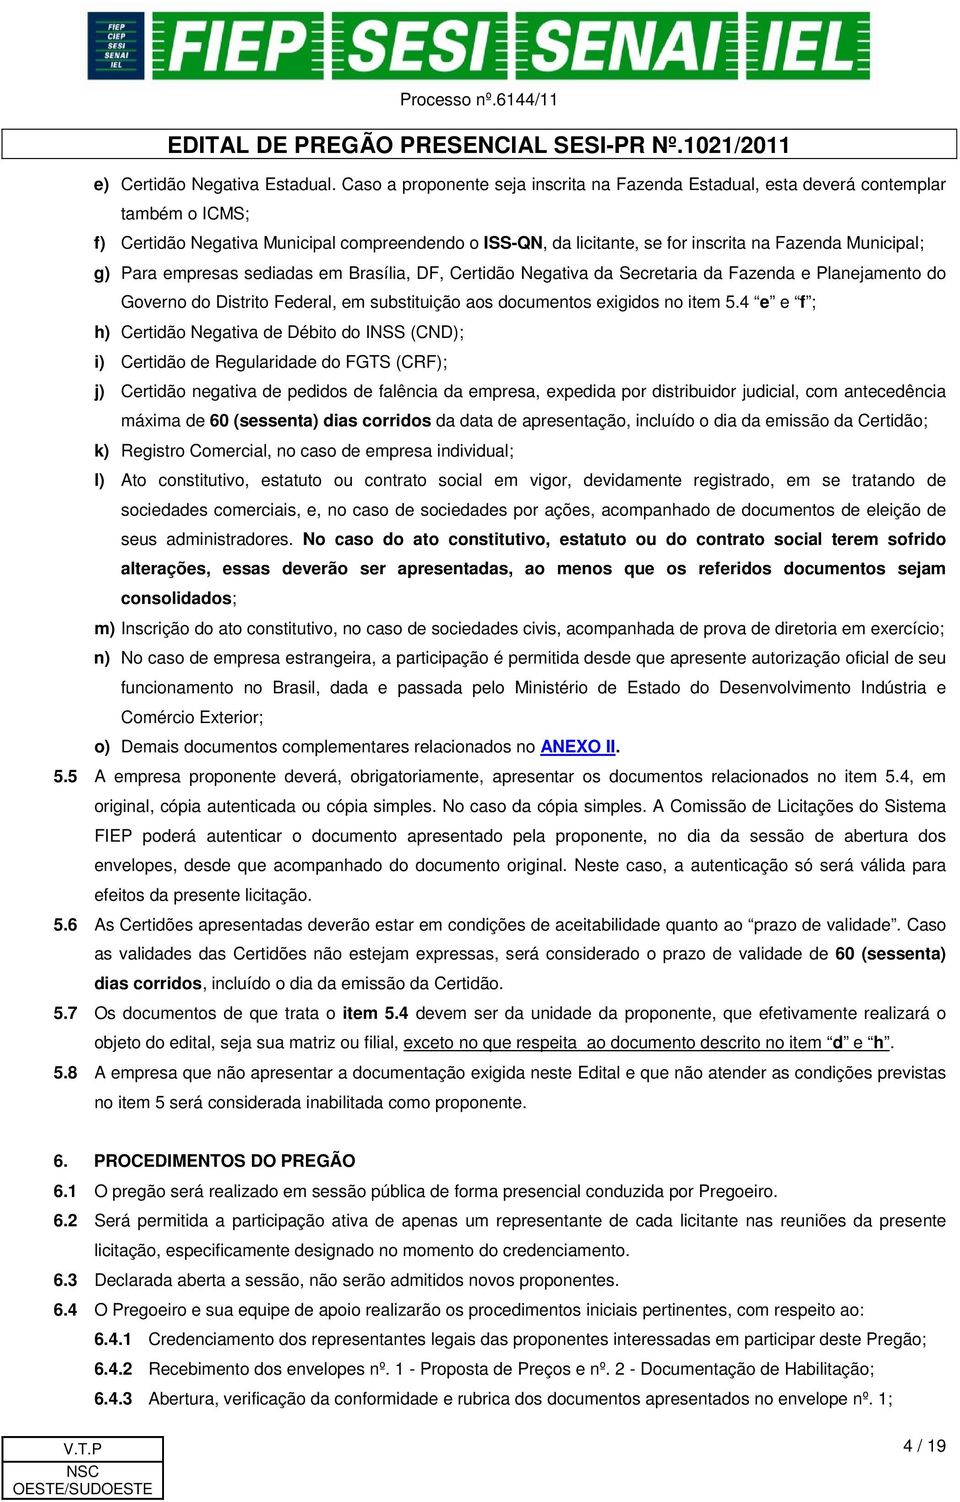 g) Para empresas sediadas em Brasília, DF, Certidão Negativa da Secretaria da Fazenda e Planejamento do Governo do Distrito Federal, em substituição aos documentos exigidos no item 5.